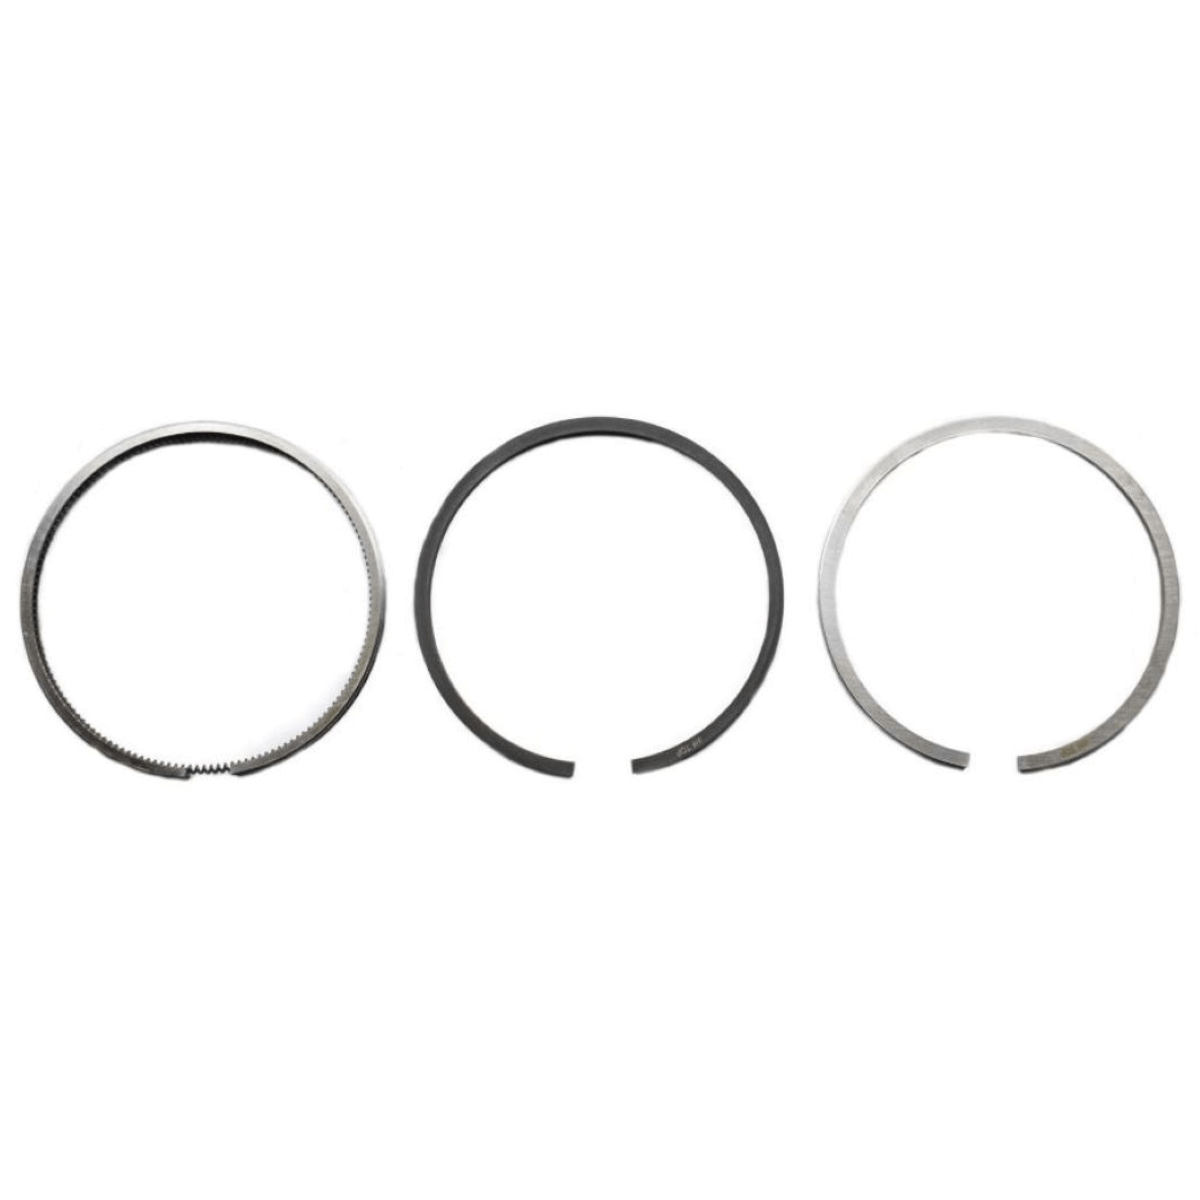 Piston rings Hinomoto C172, C174, Toyosha CS100 Hinomoto C: C172 C174 Deutz: 5015 5215 Engine: Toyosha CS100 Dimensions: Bore: 73mm 6071-0953-00-1 2101384-2 72101384